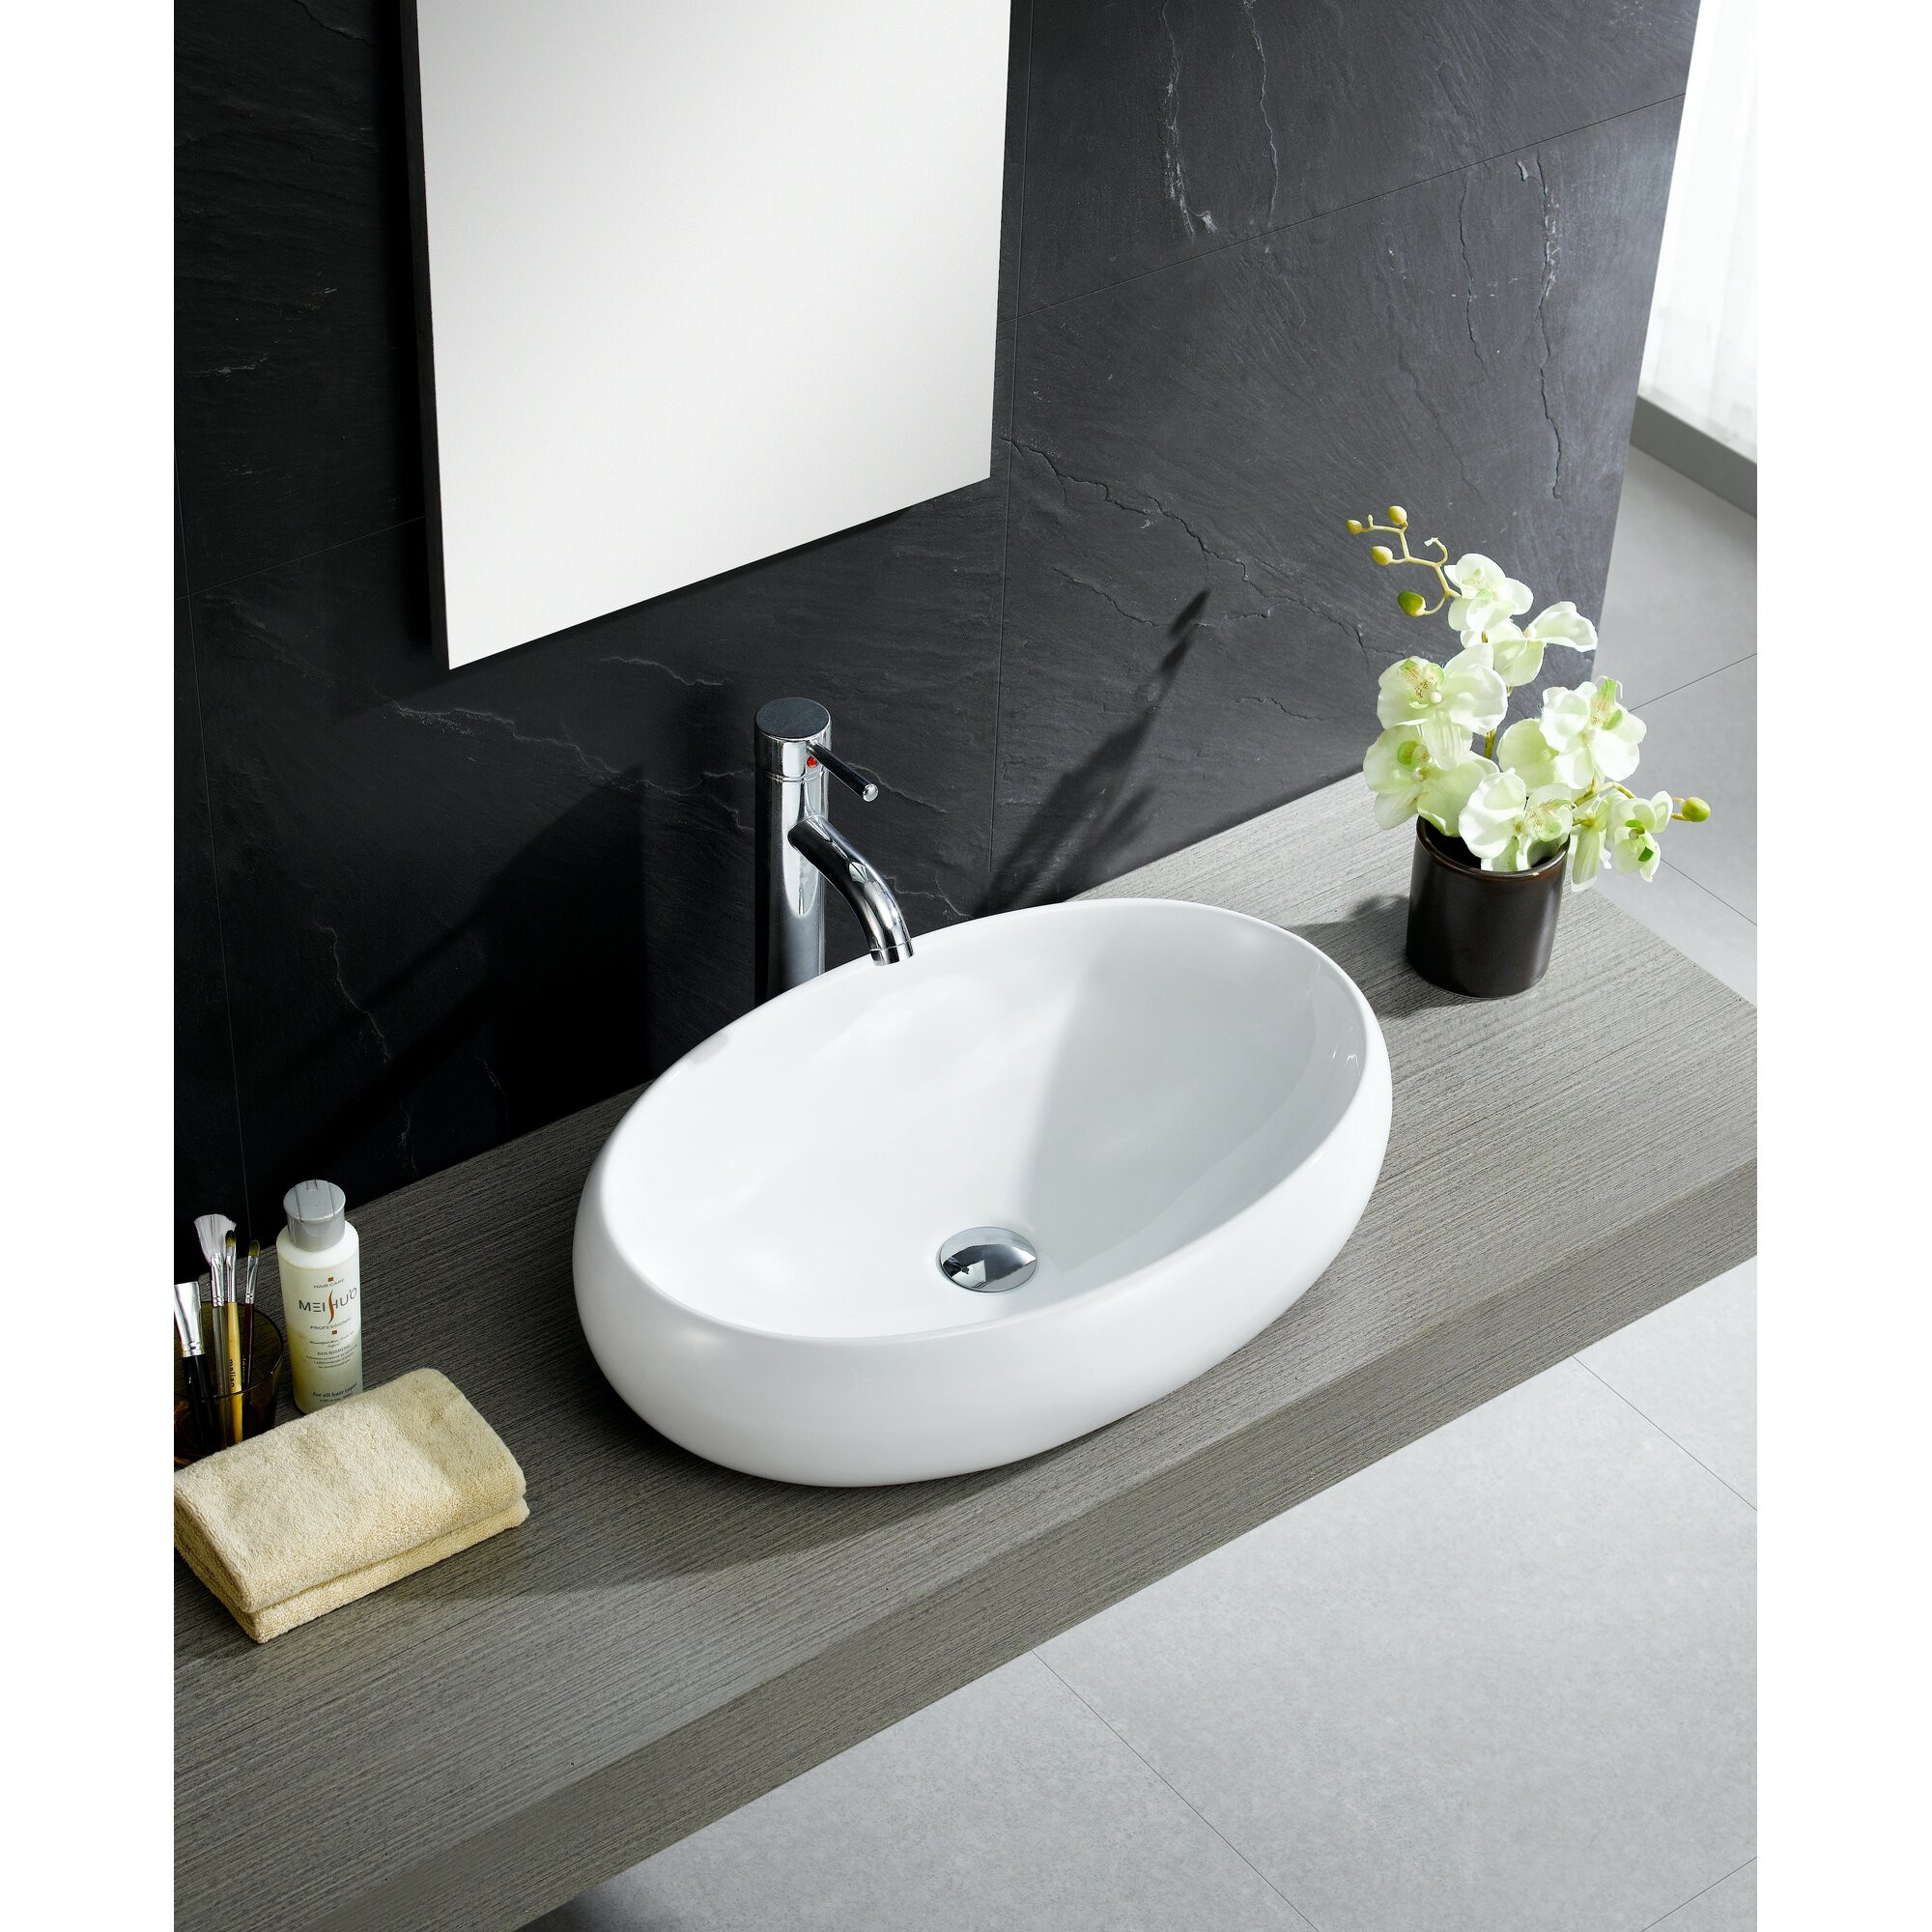 Wayfair Bathroom Sinks
 Fine Fixtures Modern Oval Vessel Bathroom Sink & Reviews